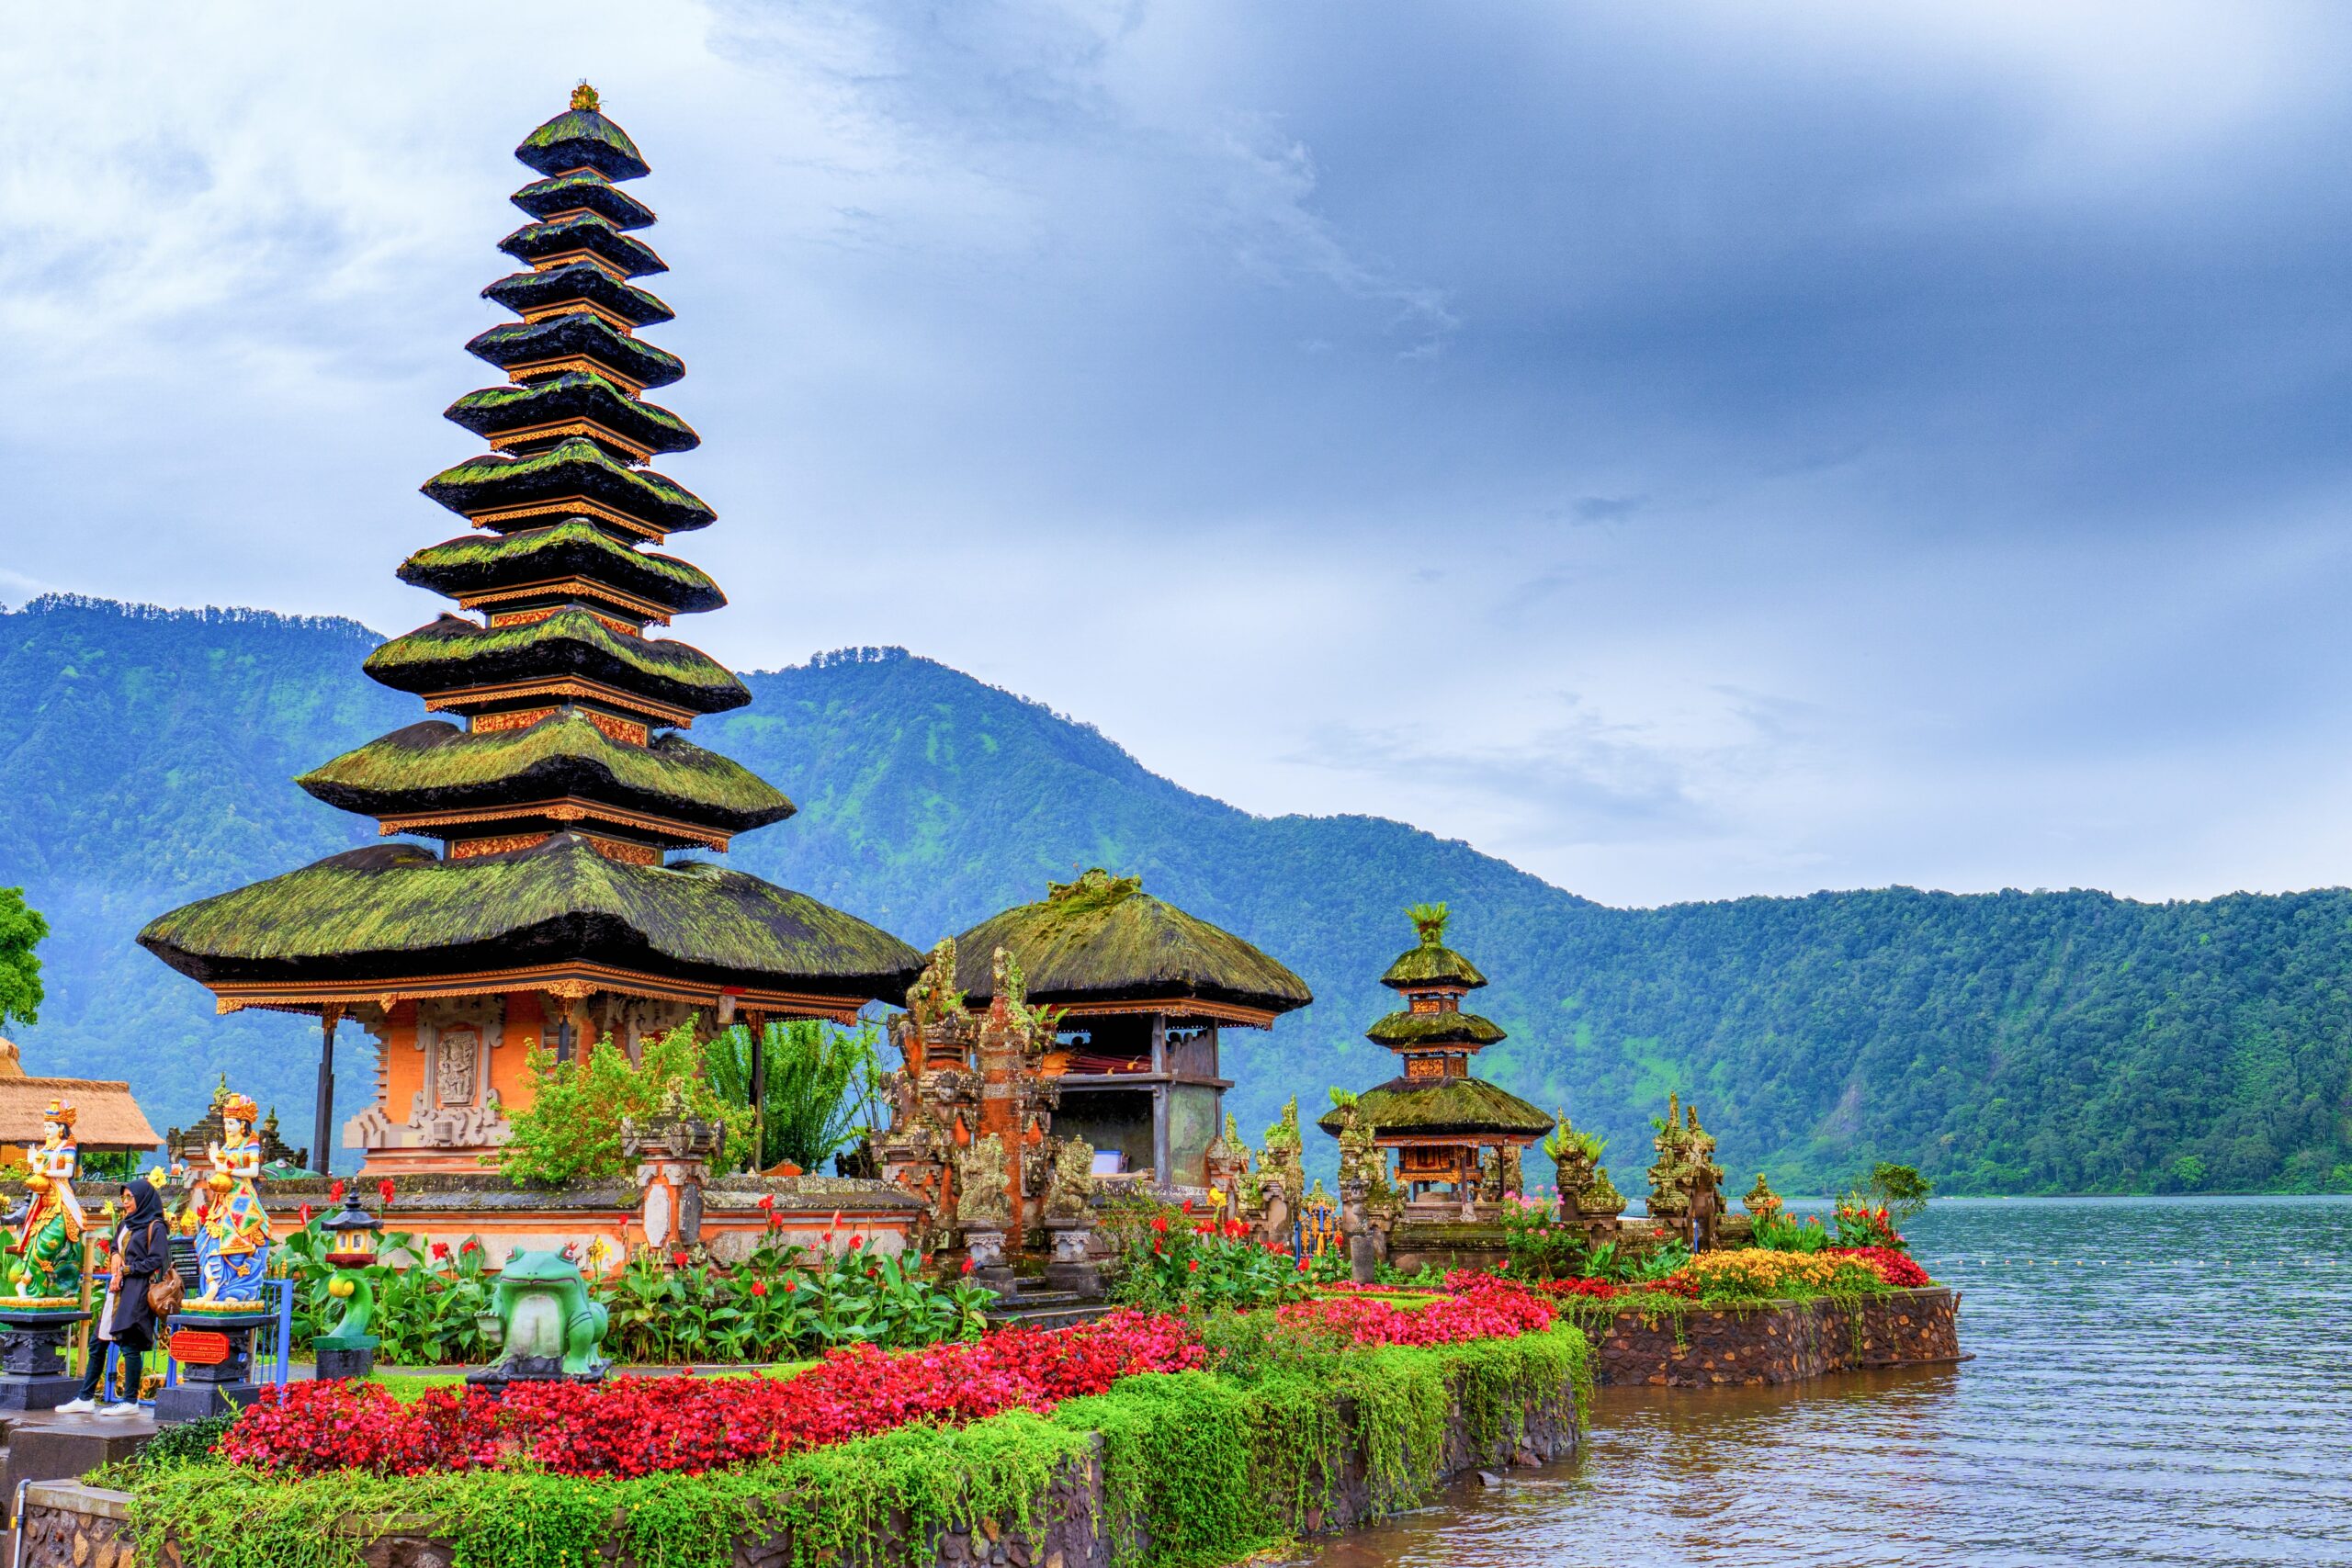 A beautiful temple in Bali